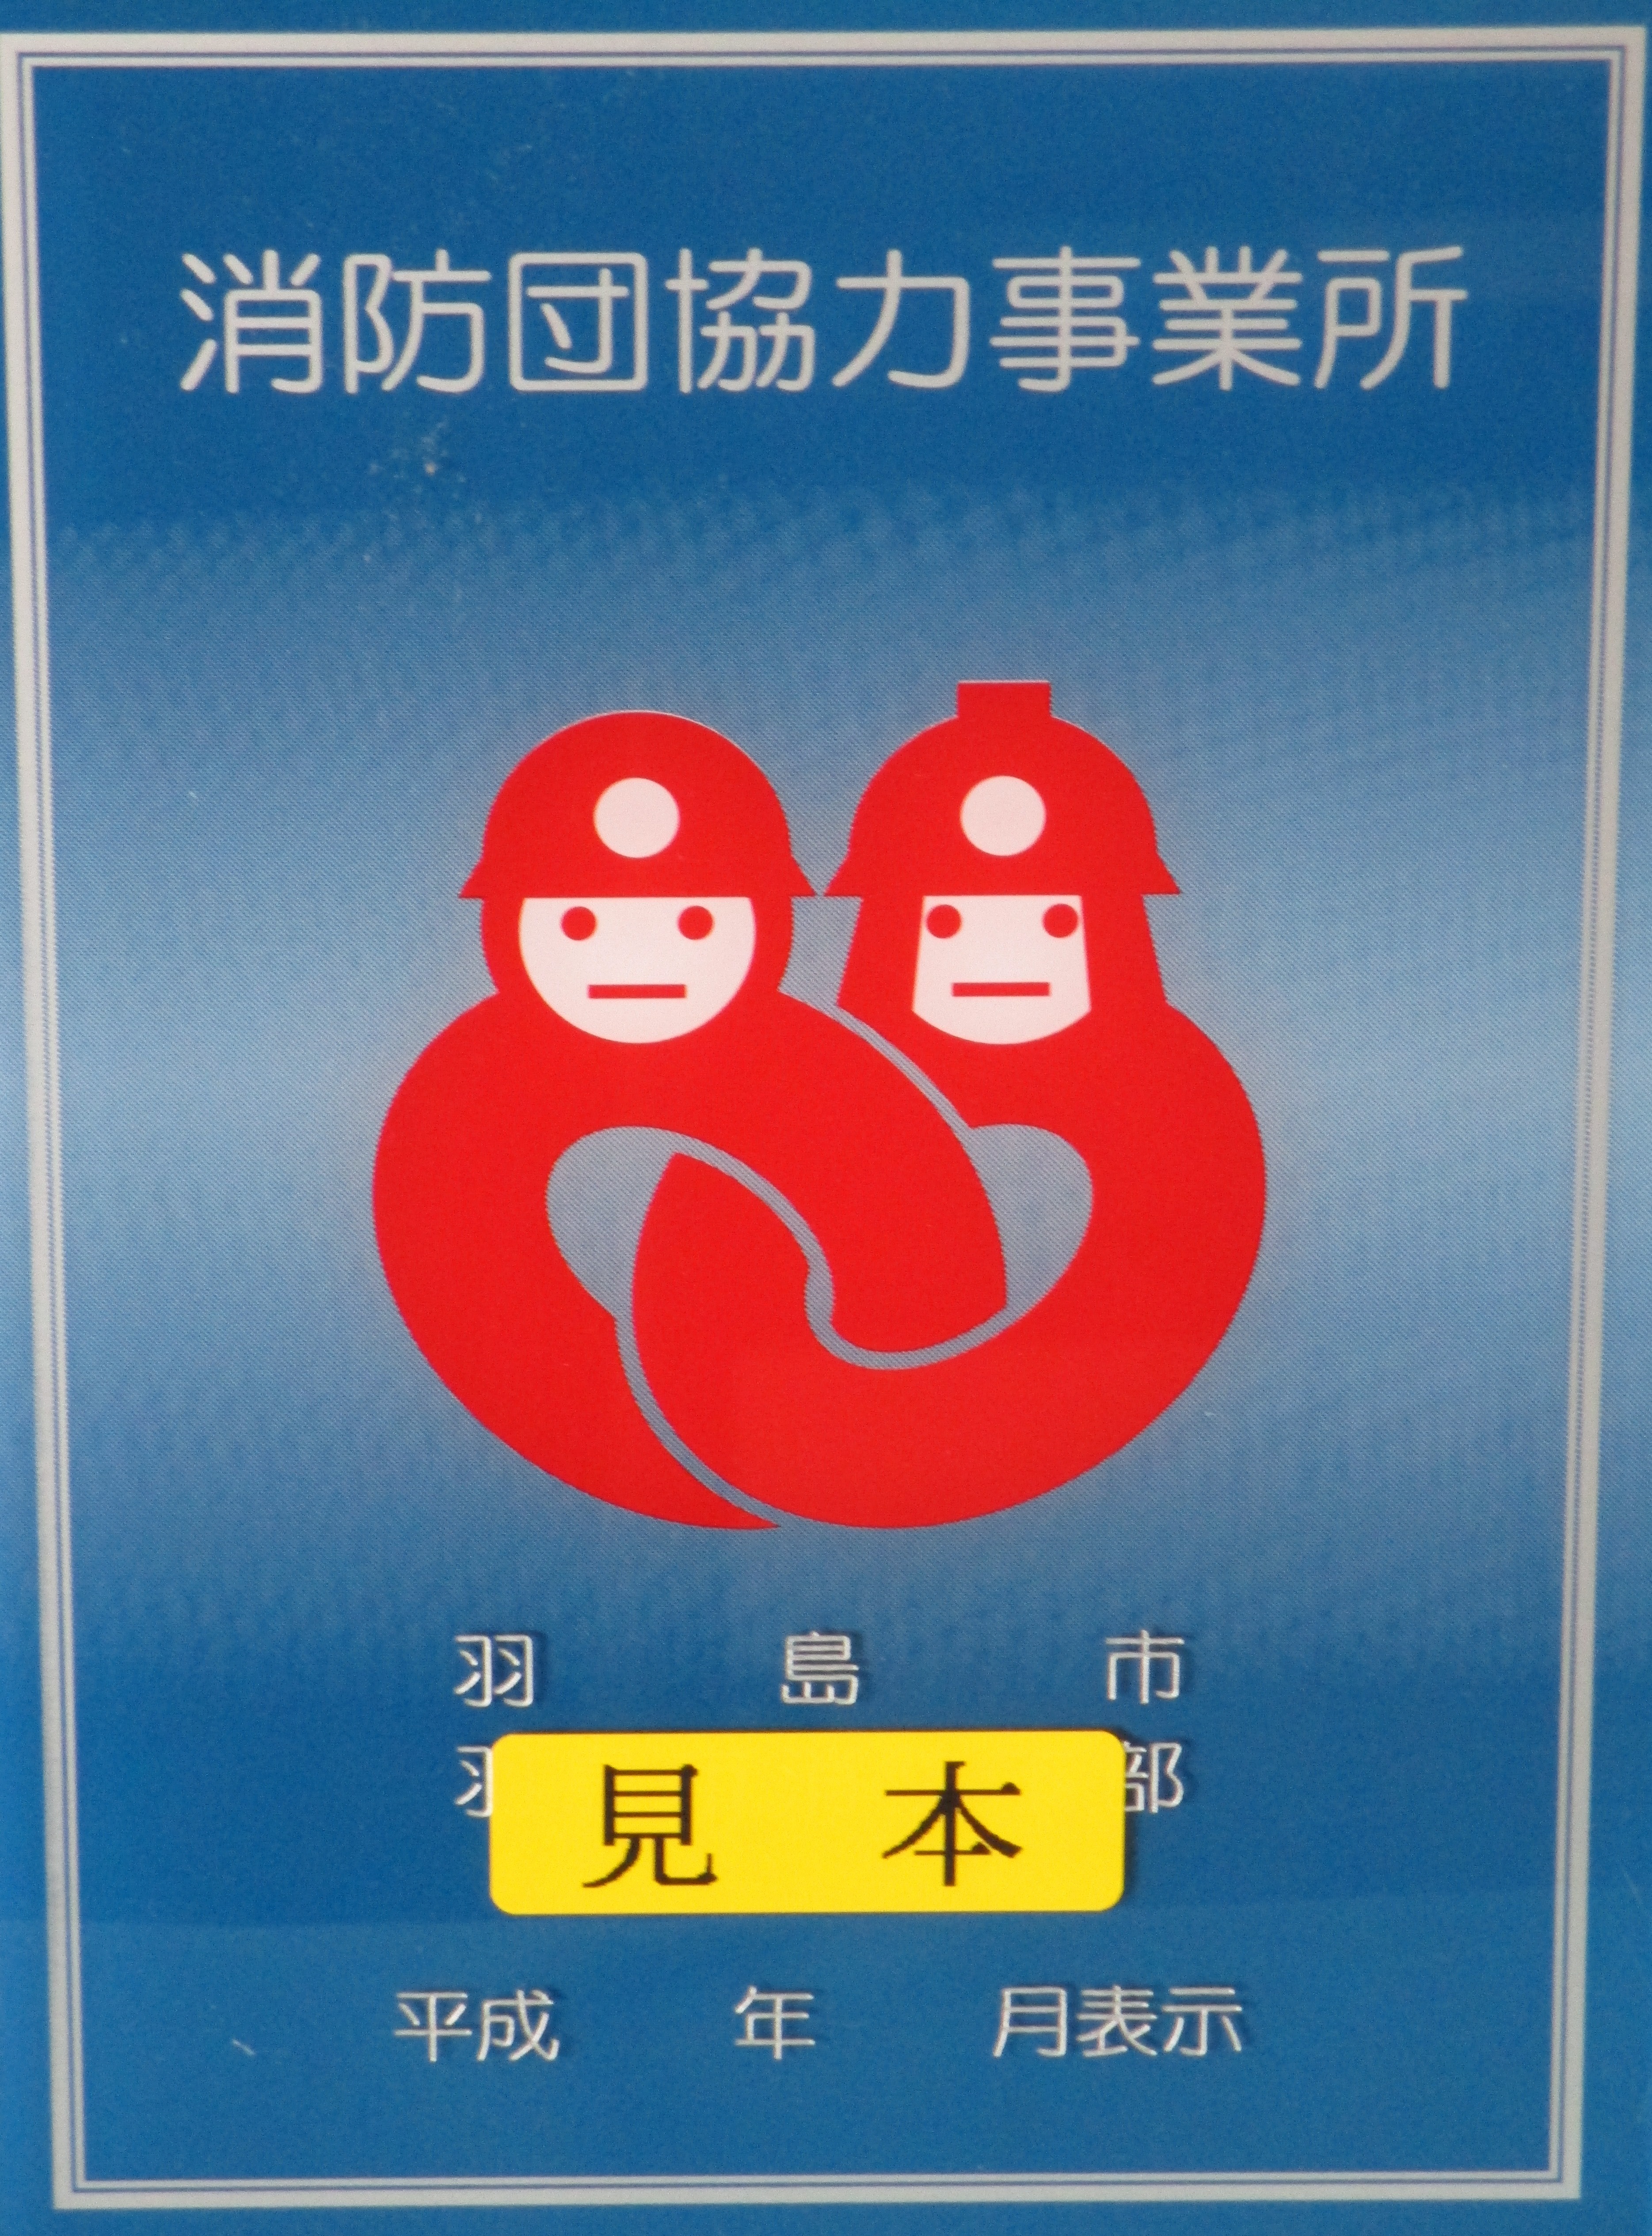 羽島市消防団協力事業所の画像